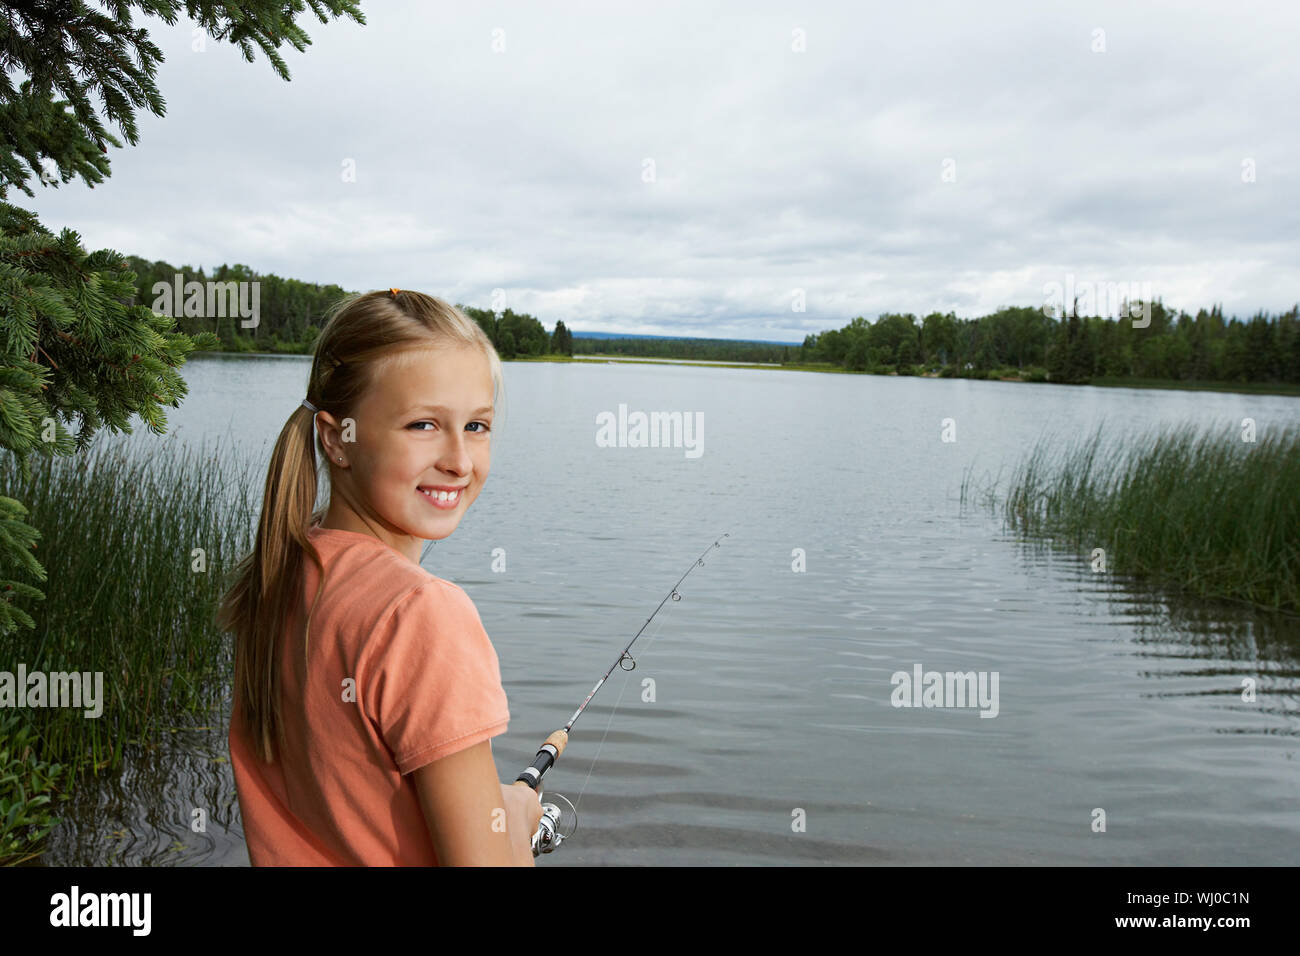 USA, Alaska, teenage girl fishing at lake, portrait Stock Photo